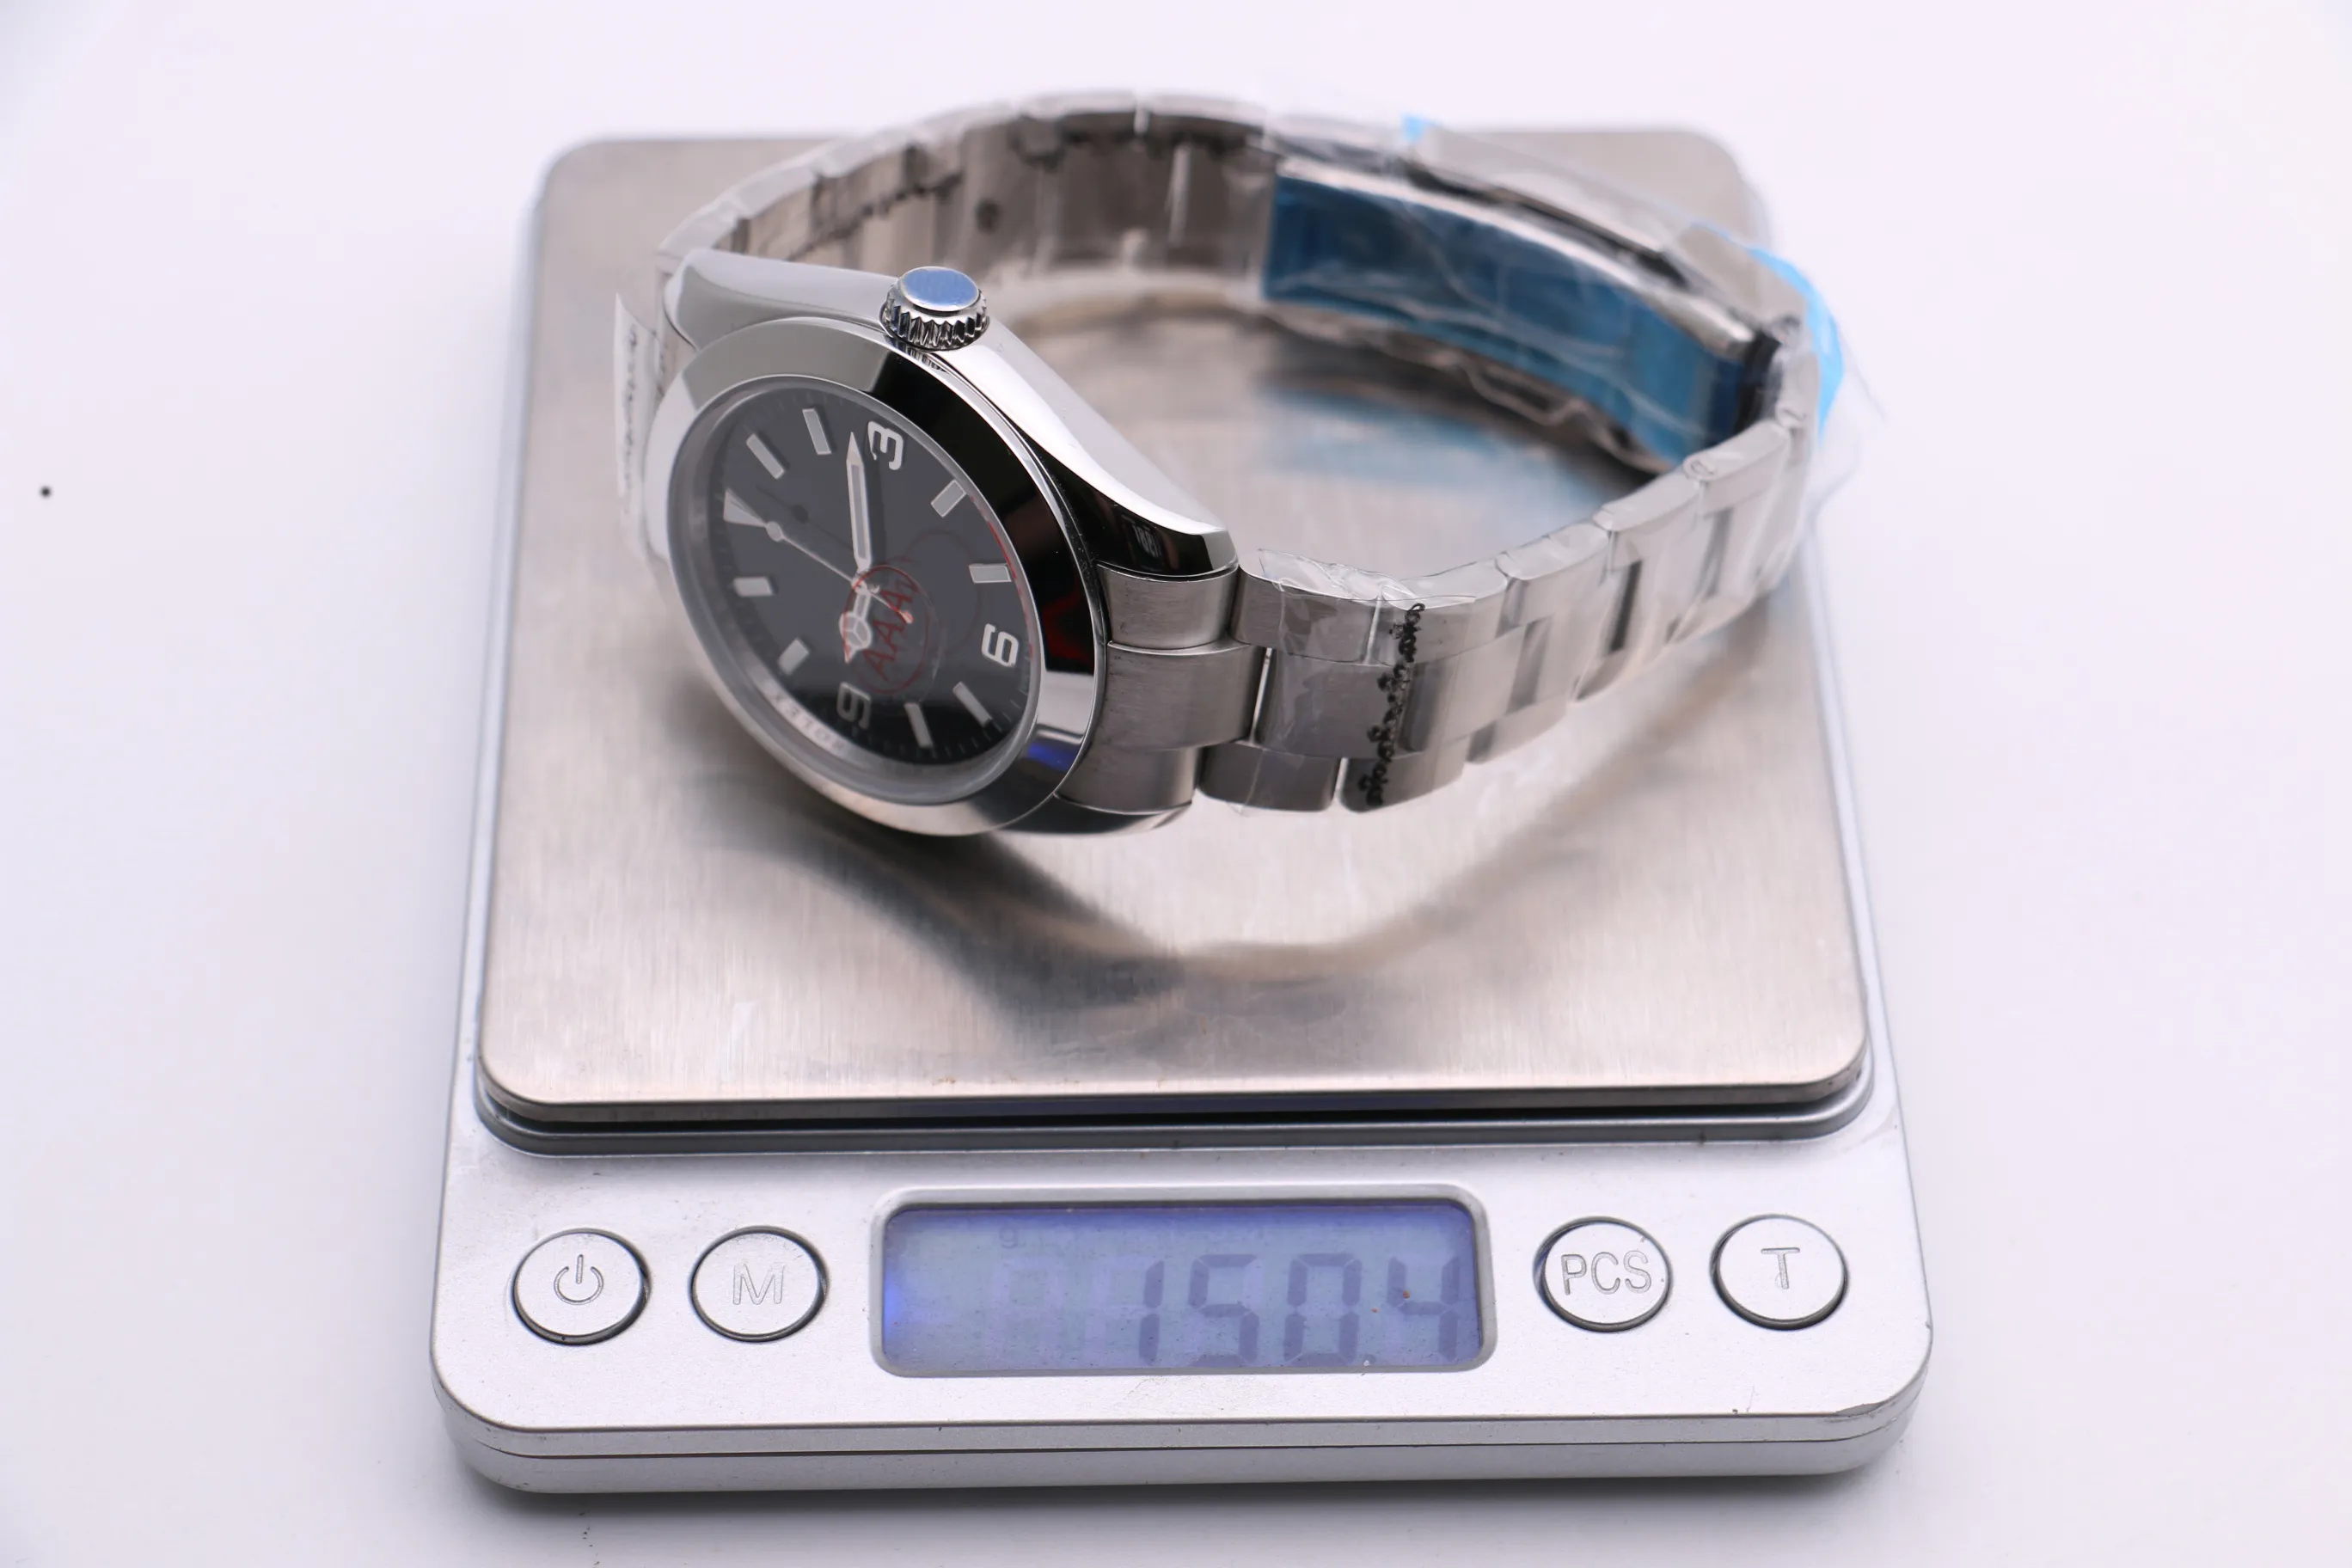 Relógio mecânico masculino 116400 mostrador preto prata branco caixa de aço inoxidável cinta dobrável fecho de três pinos esportes modernos fashio234l